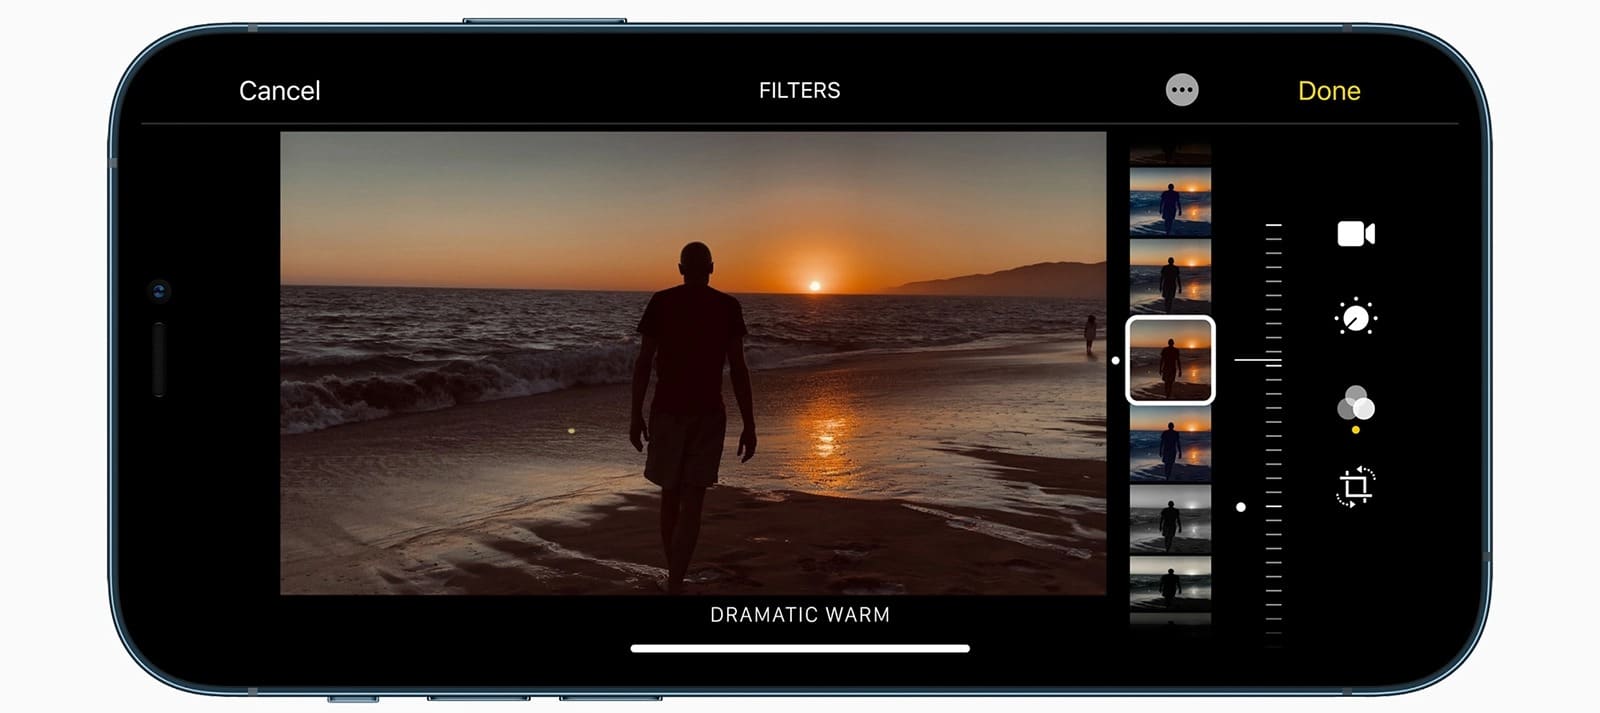 iPhone 13 mới sẽ được bổ sung nhiều tính năng chụp ảnh cho camera